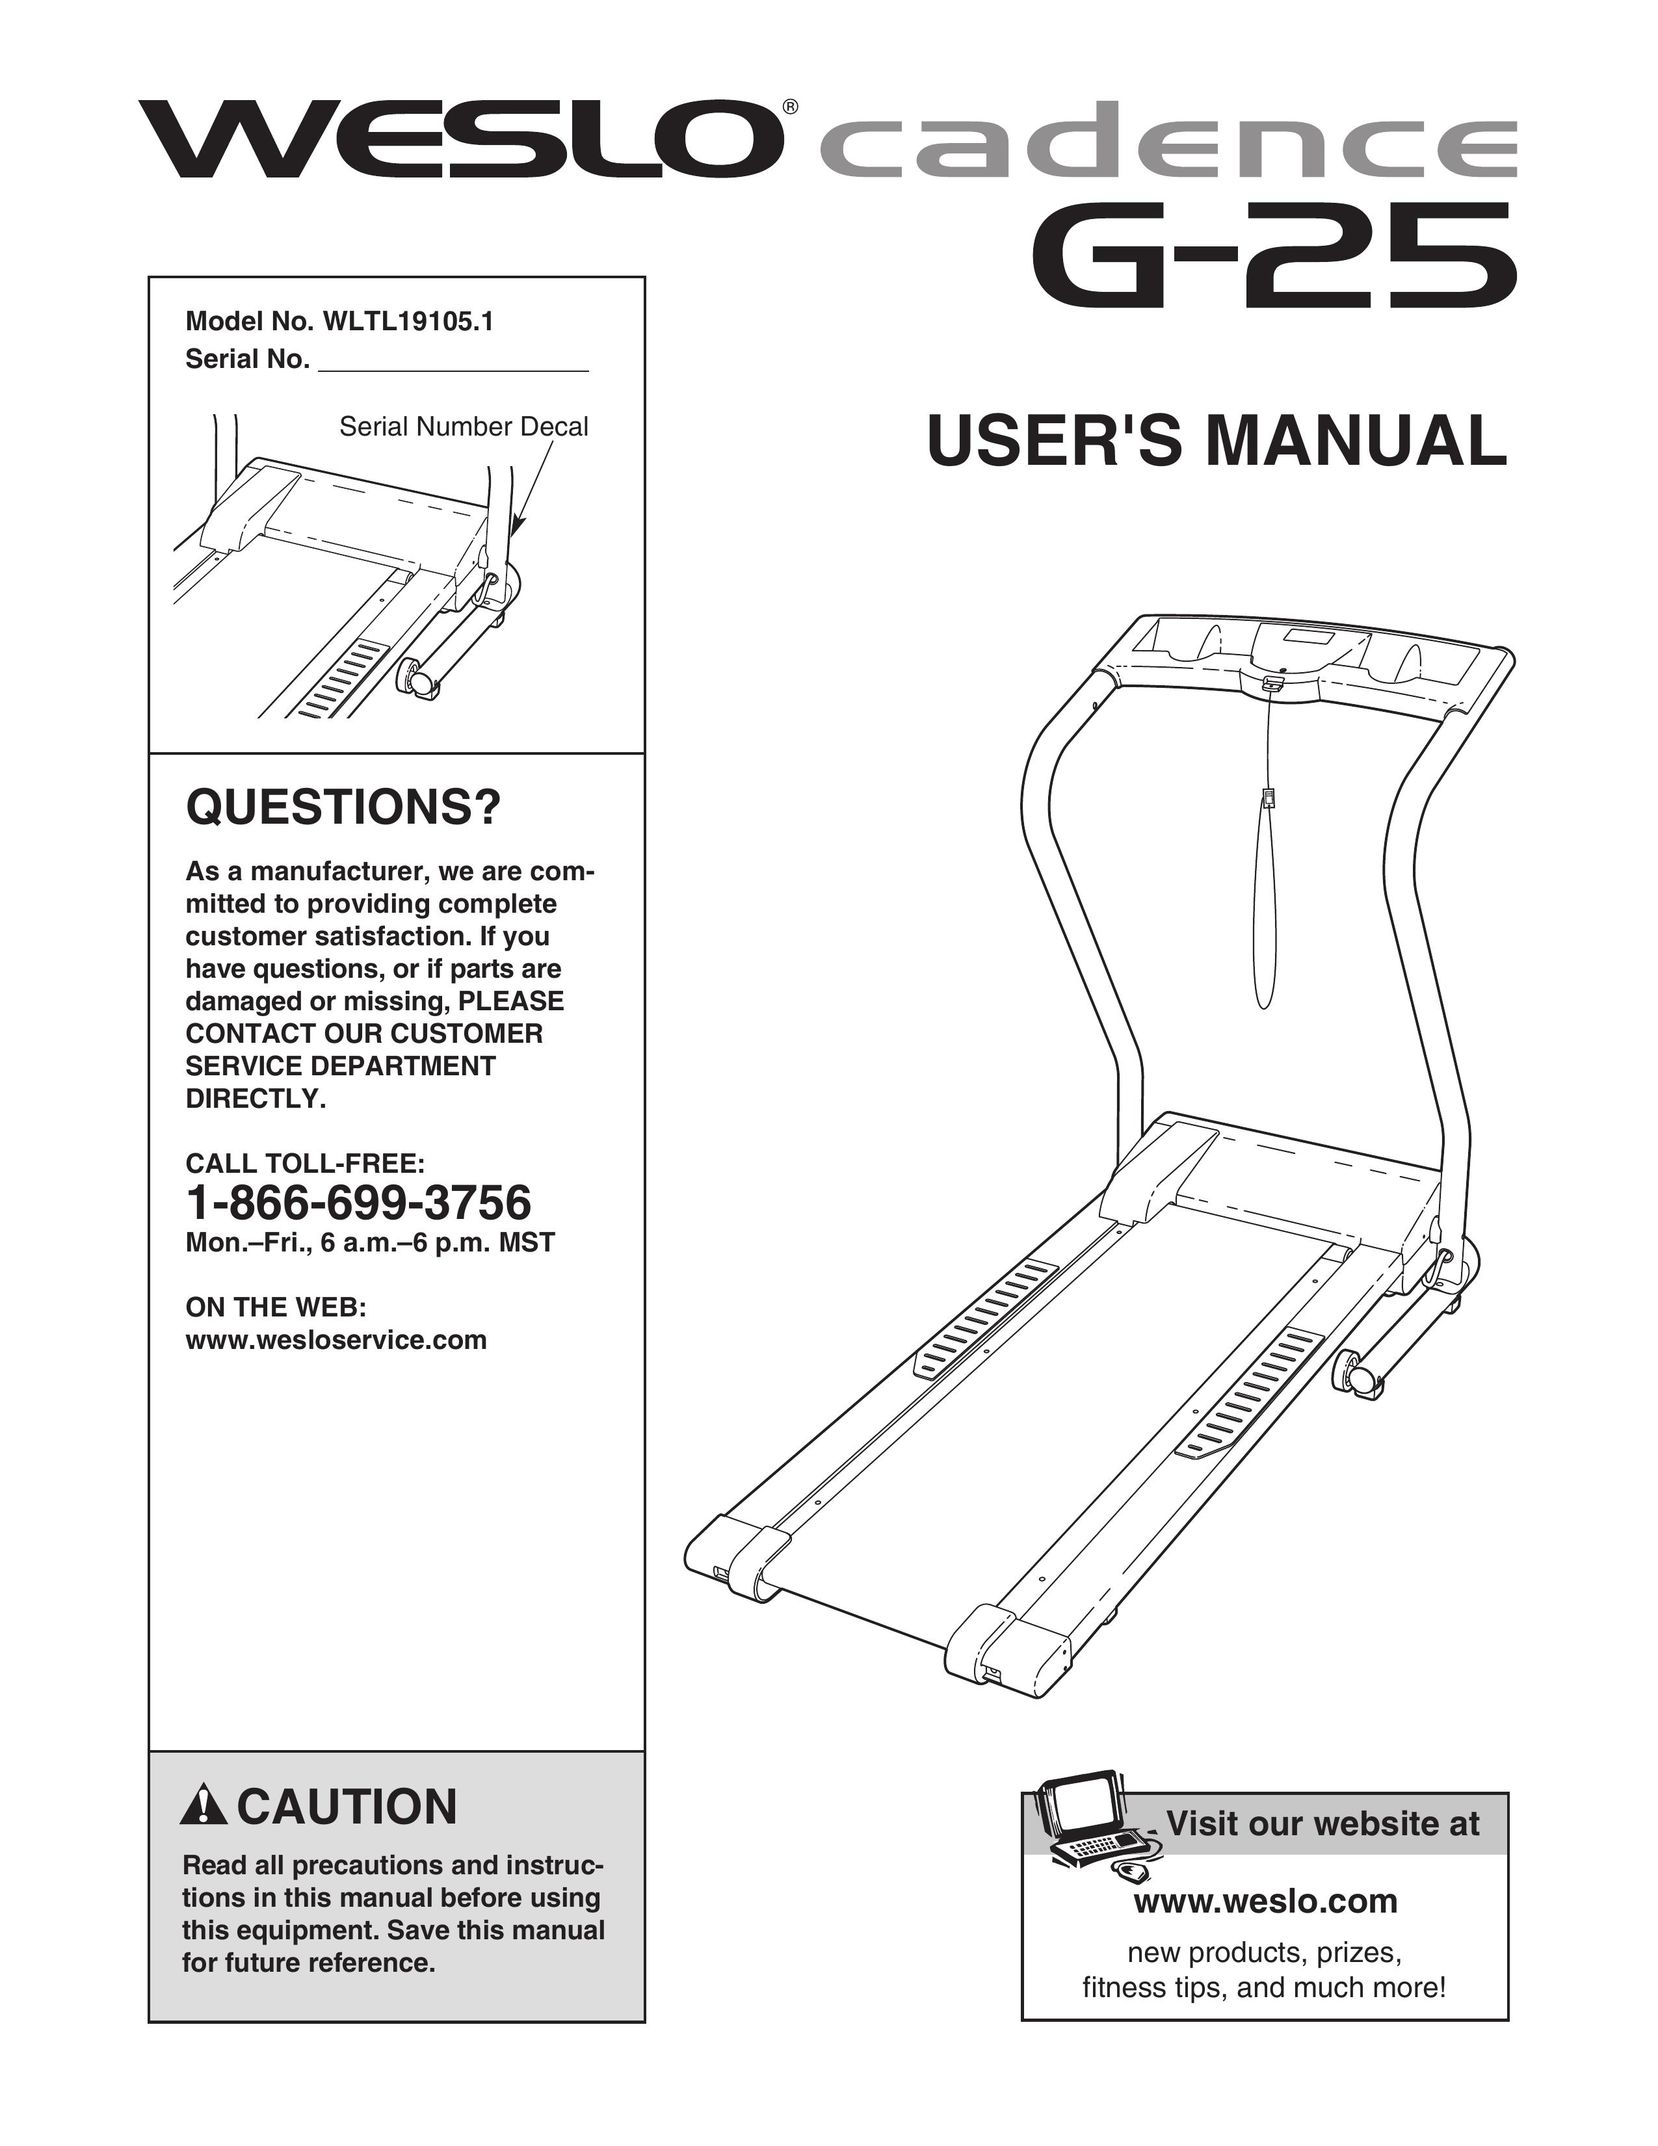 Weslo G-25 Treadmill User Manual